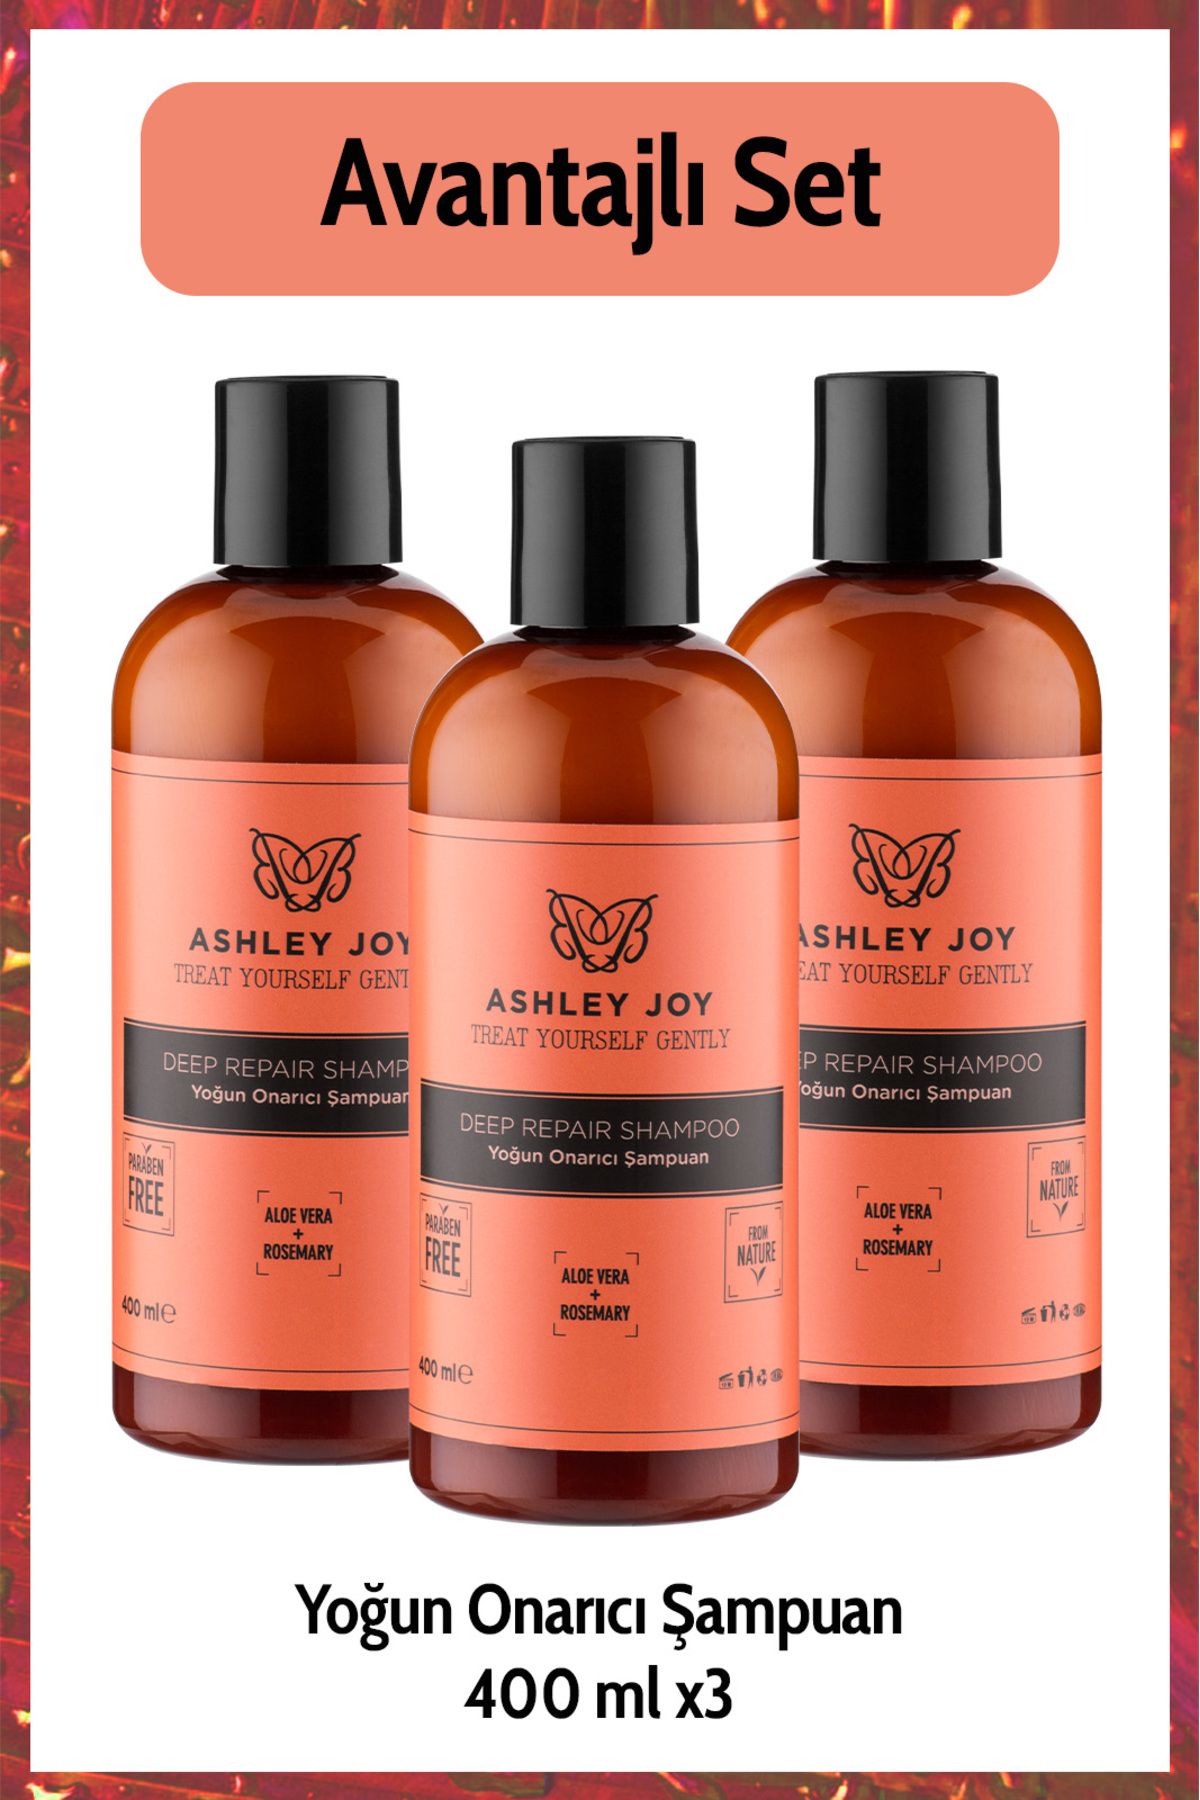 Ashley Joy İşlem Görmüş Yıpranmış Saçlara Özel Biberiye Ve Keratin Içeren Yoğun Onarıcı Şampuan 400 ml X3